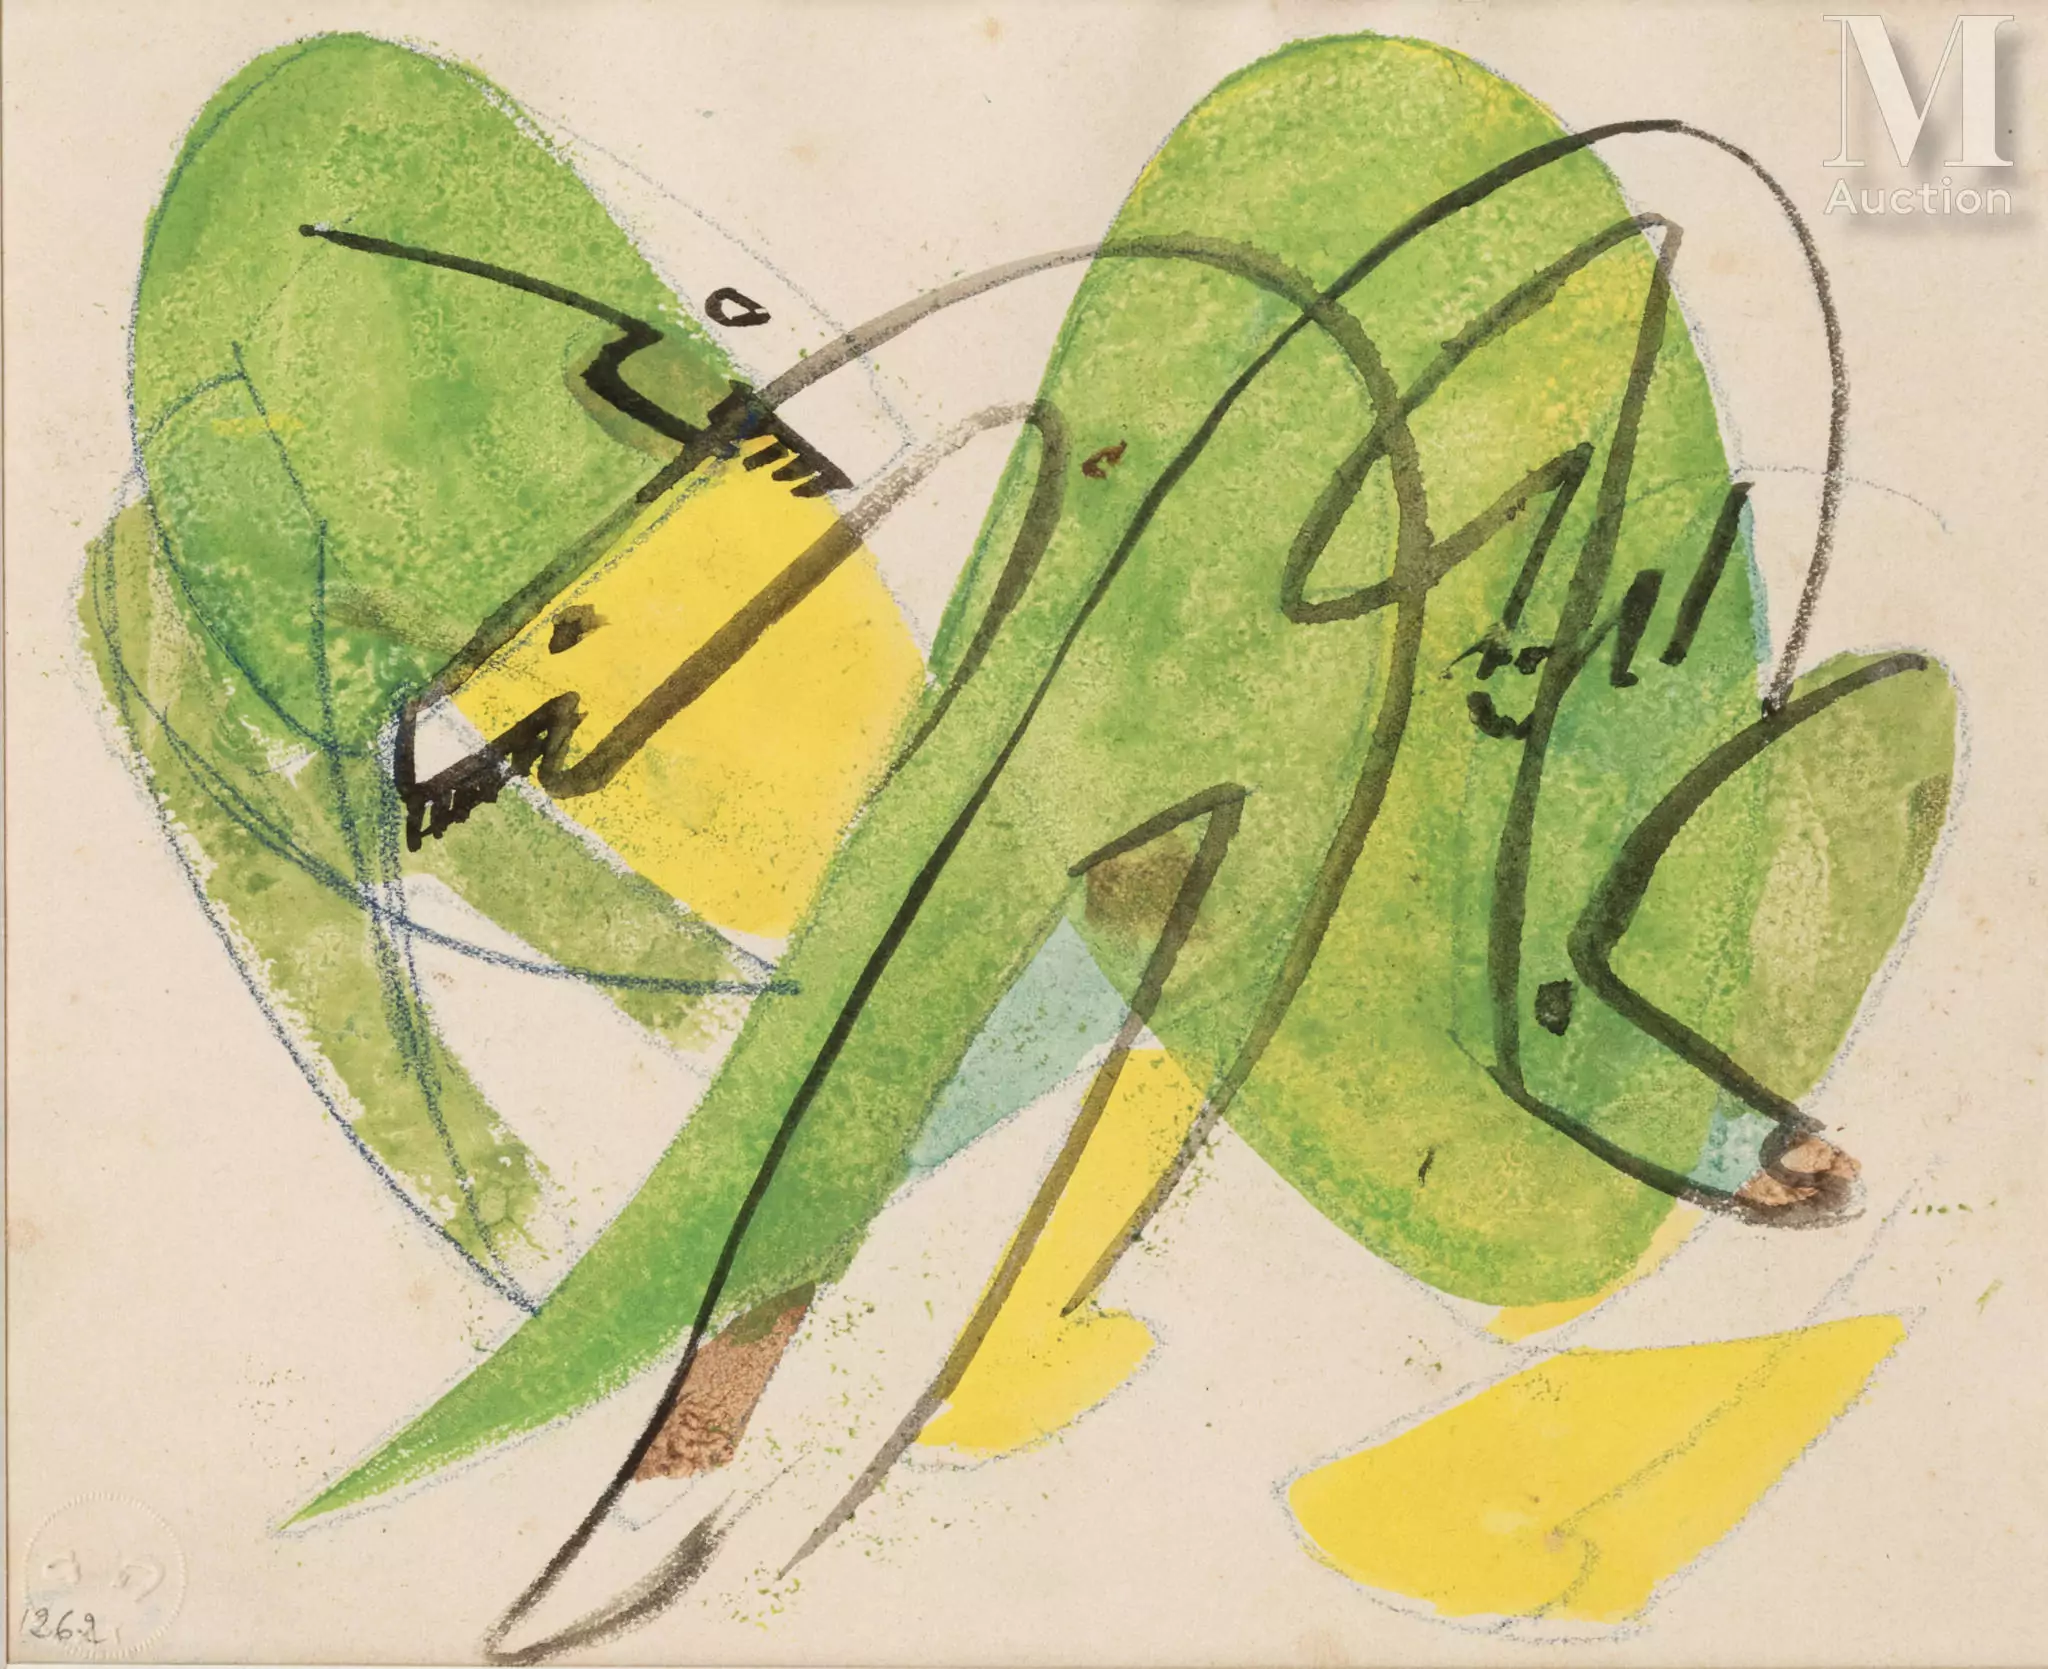 André MASSON (Balagny sur Therain 1896-Paris 1987)Combat d’animaux vert et jaune, 1929
Gouache et encre sur papier 